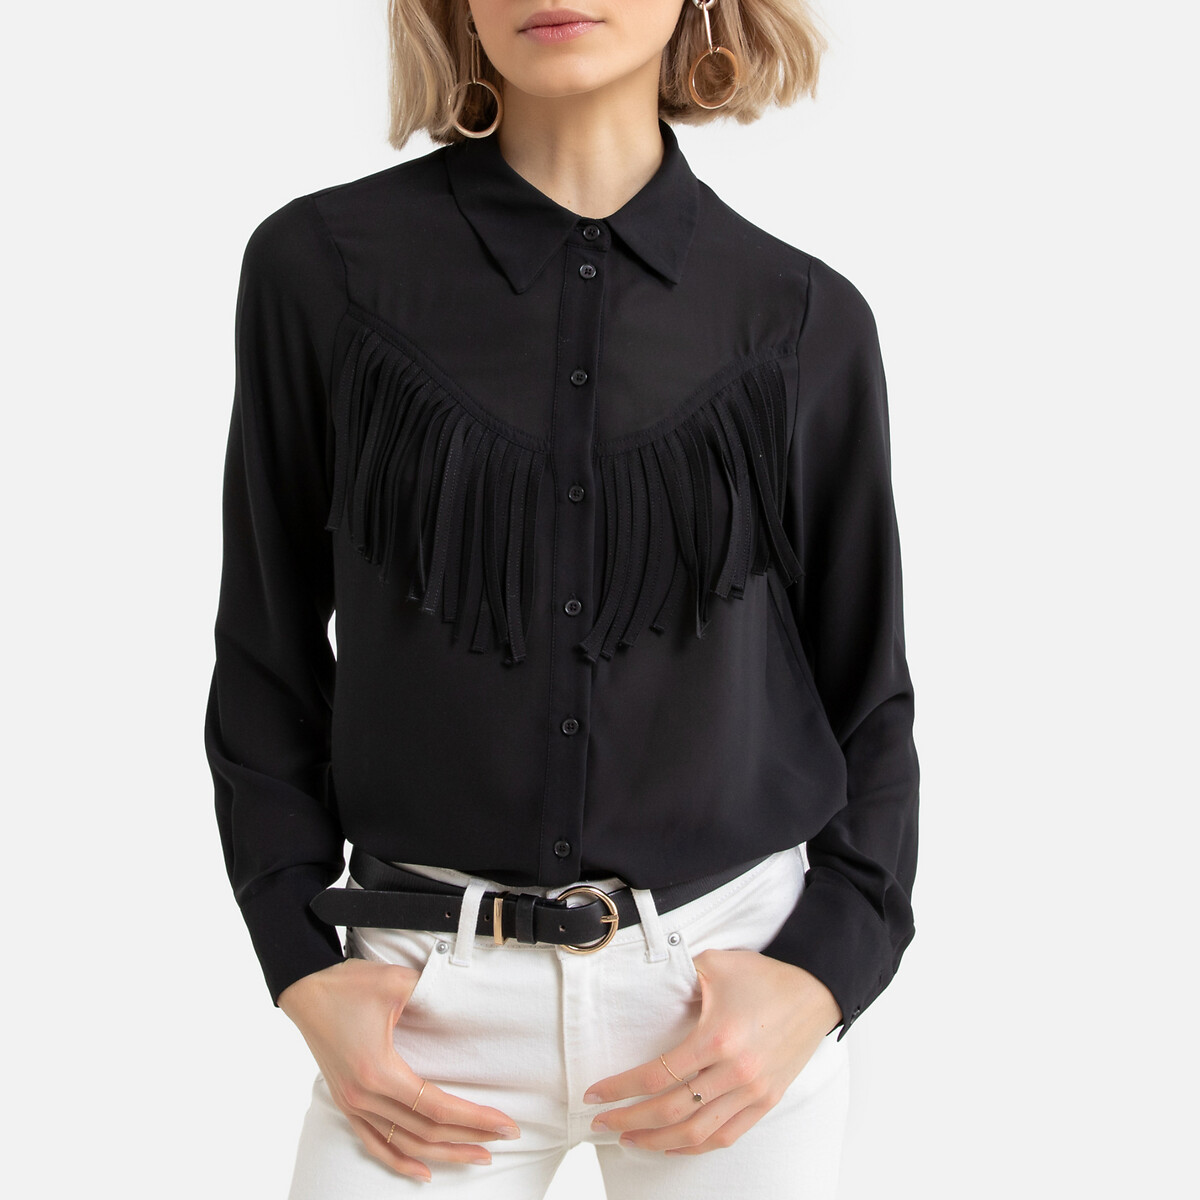 fit cowboy blouse with fringe details black Moda | La Redoute